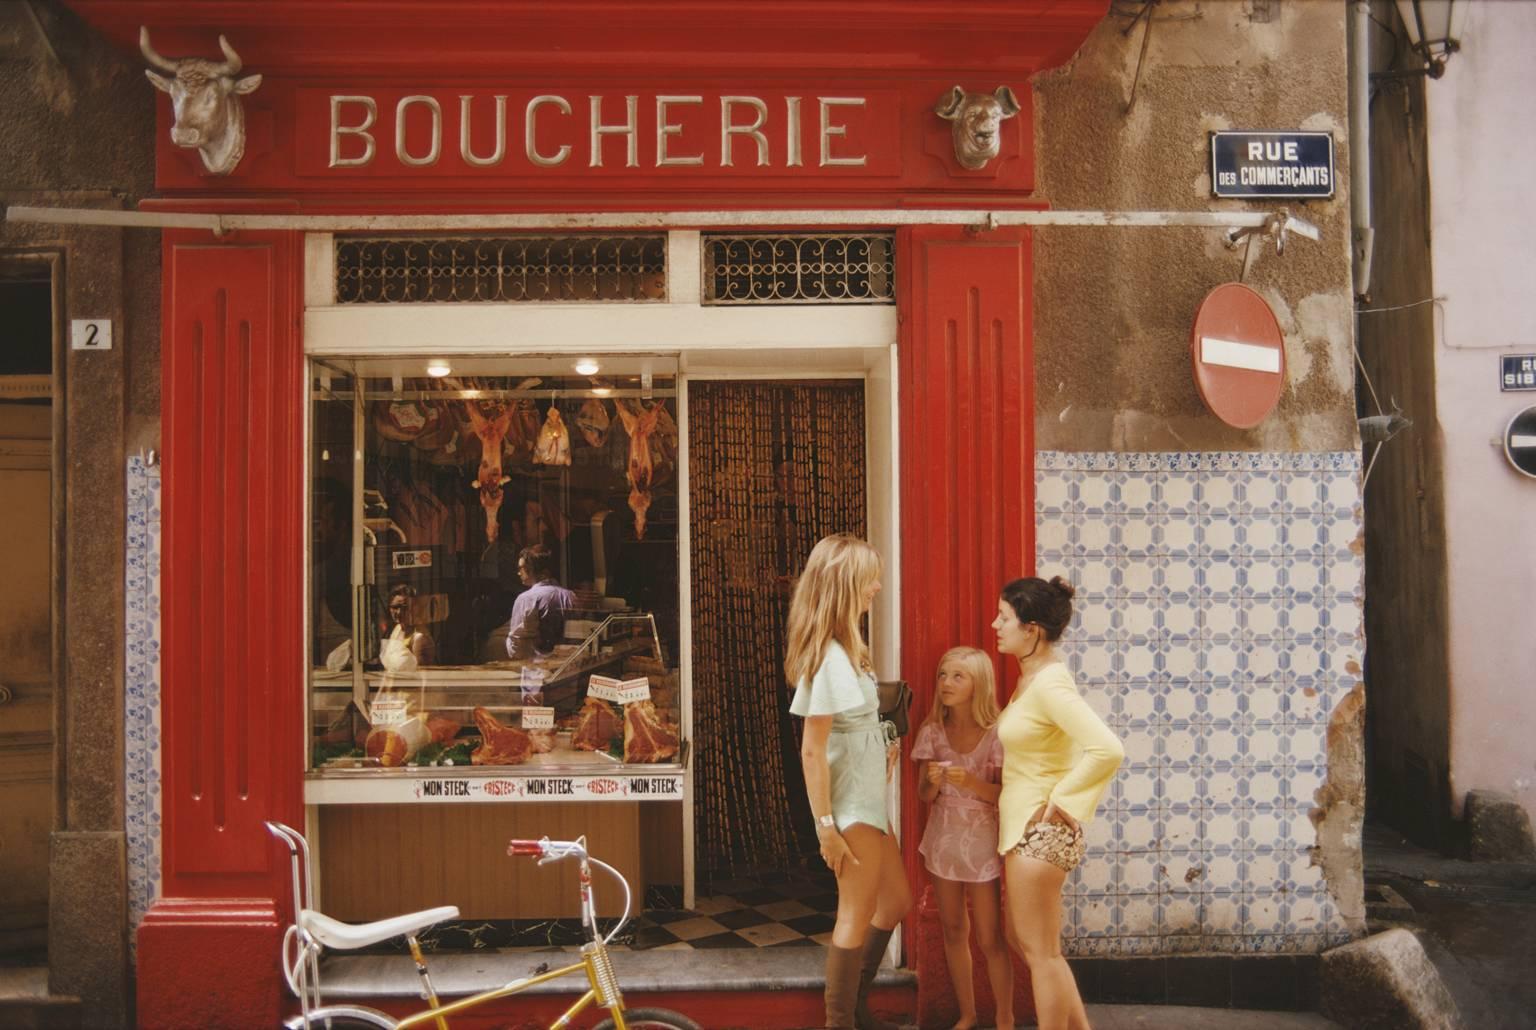 Saint-Tropez Boucherie" von Slim Aarons

Eine Metzgerei in der Rue des Commercants in Saint-Tropez an der Côte d'Azur, August 1971.

Typisch "Slim" verkörpert dieses Foto den Vintage-Stil und den Glamour der Reichen und Berühmten dieser Zeit,